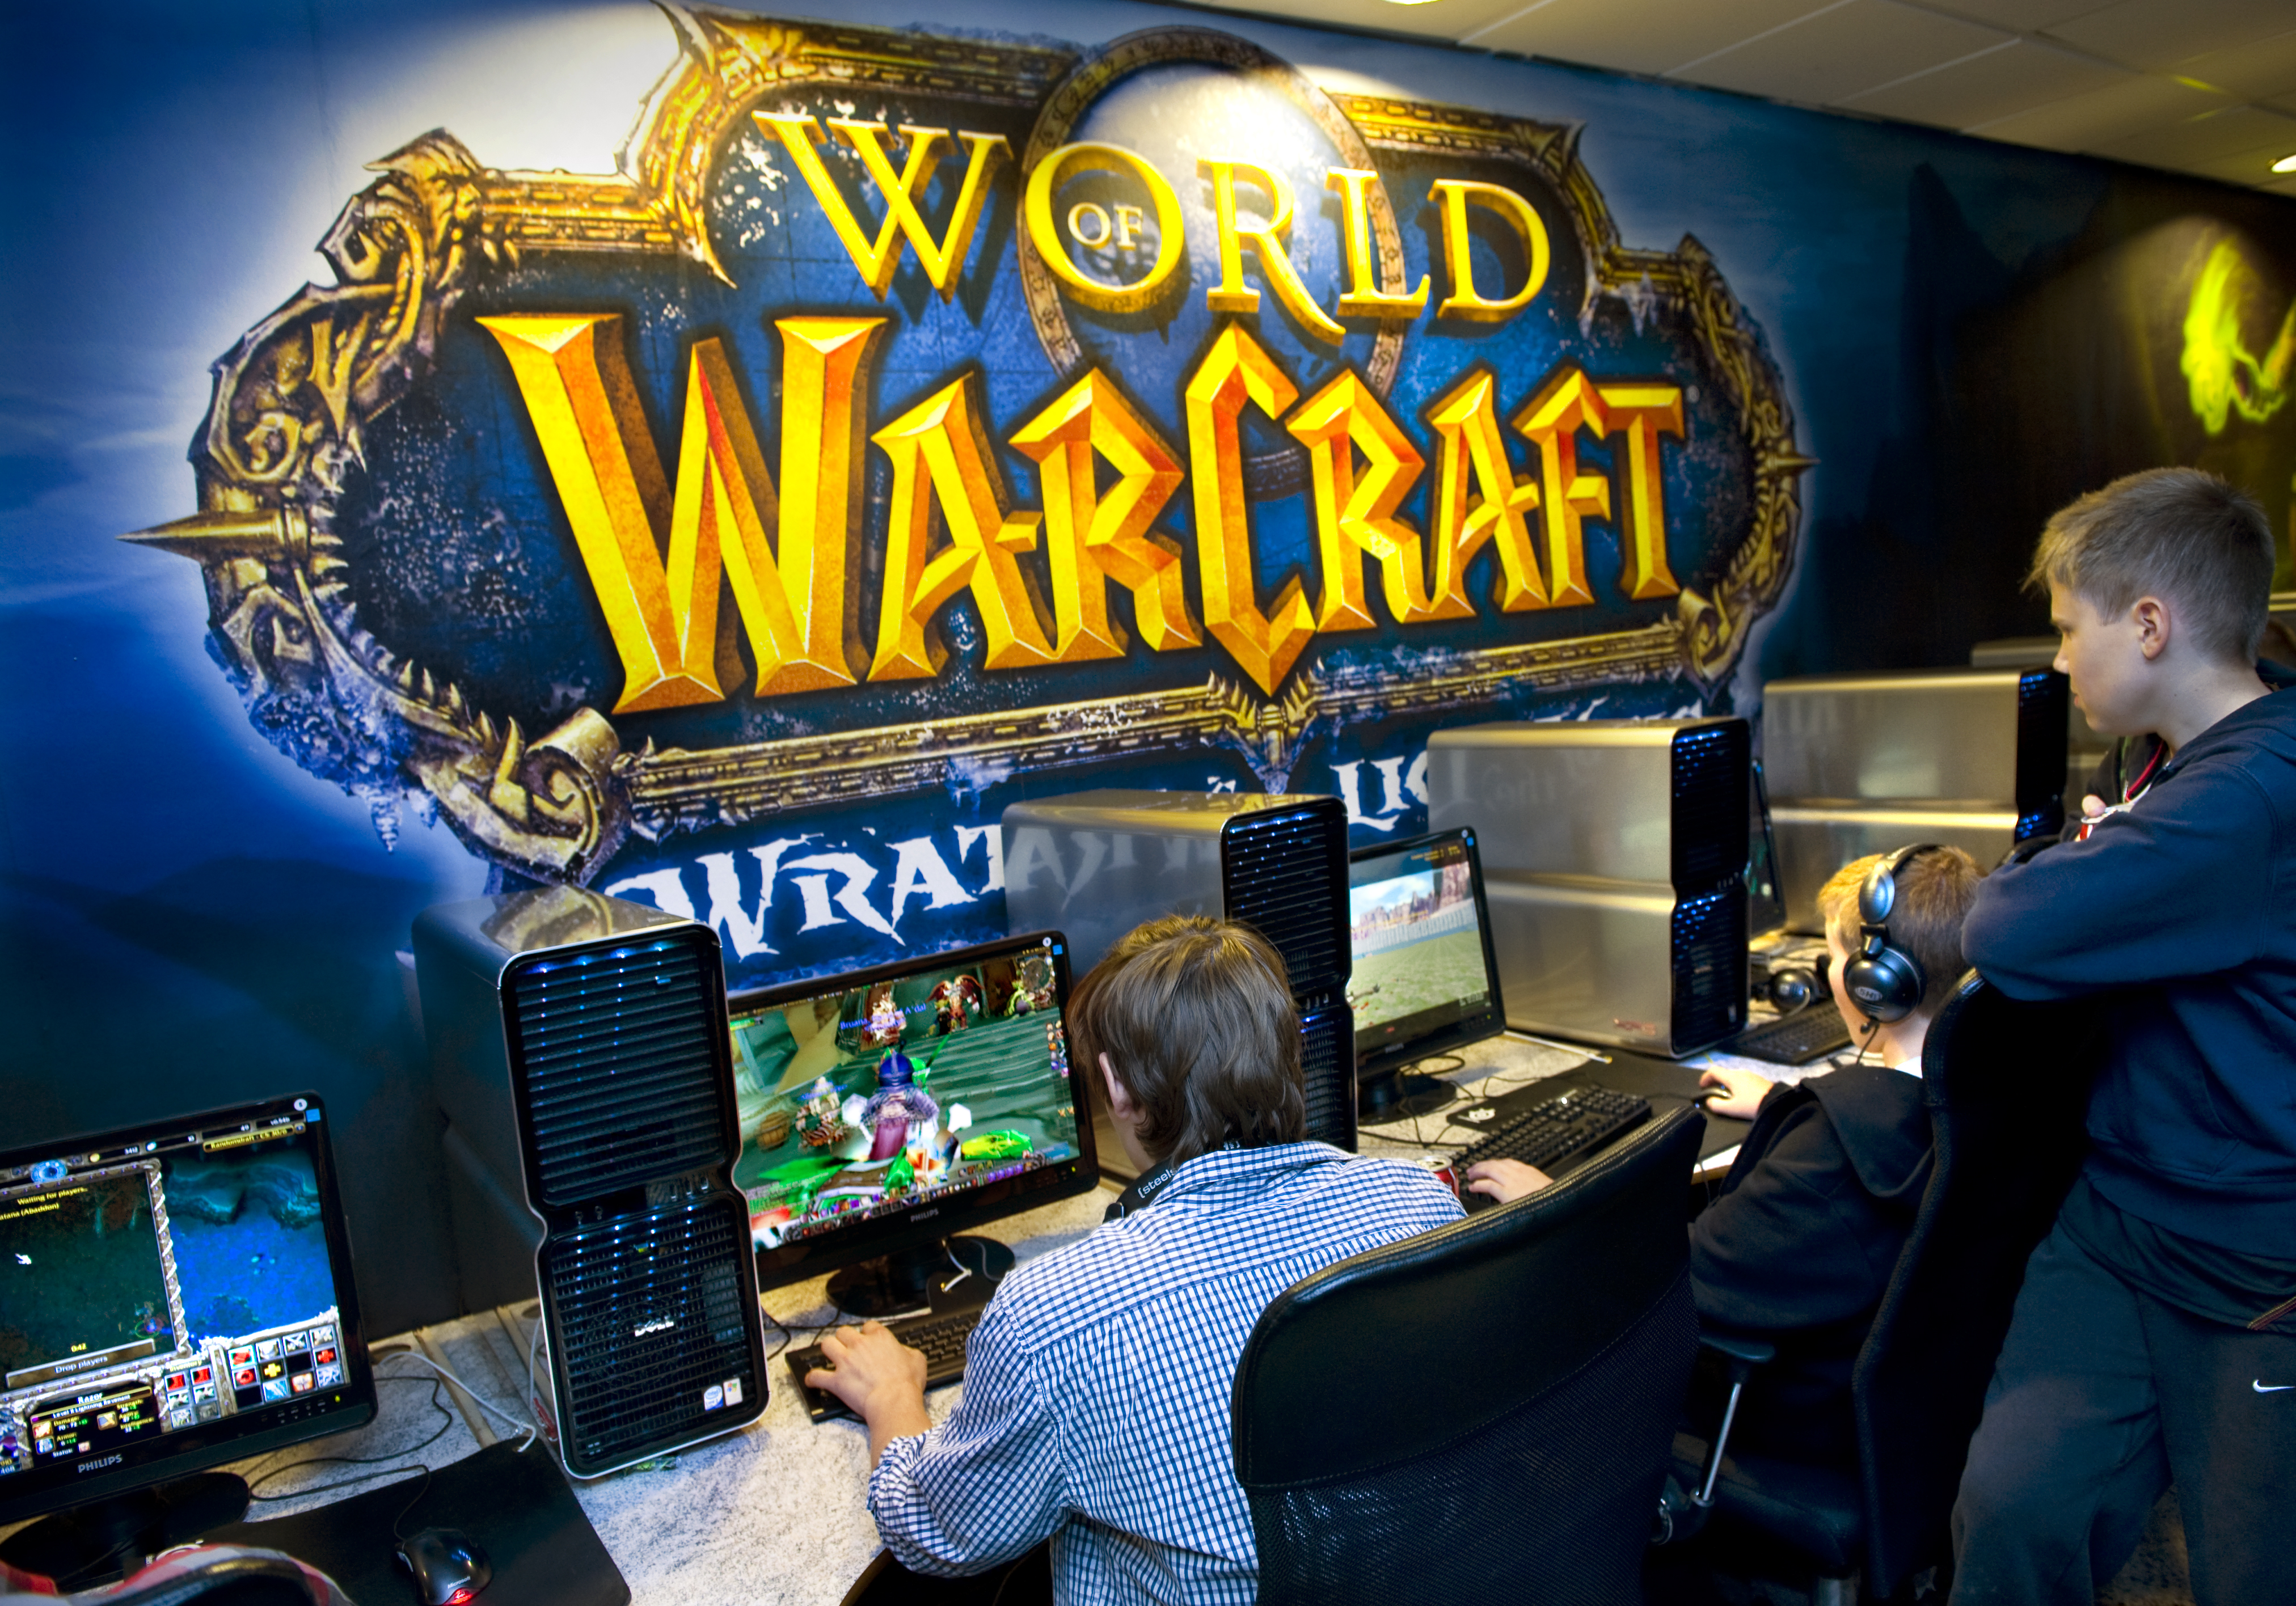 "World of warcraft är ett spel som är mycket ledarskapsdrivet", säger en företagsledare.